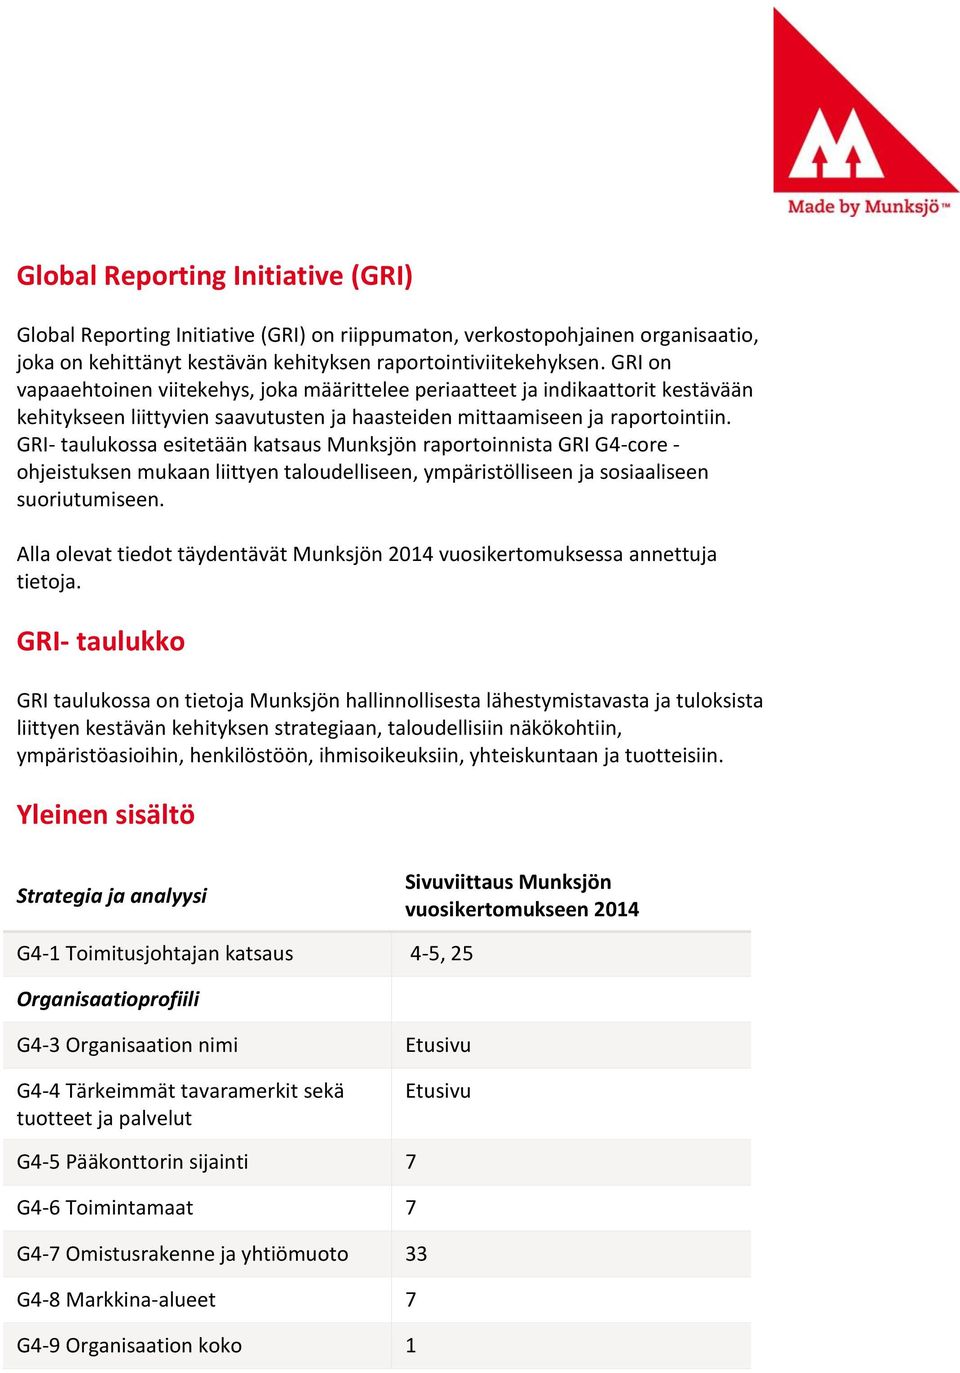 GRI- taulukossa esitetään katsaus Munksjön raportoinnista GRI G4-core - ohjeistuksen mukaan liittyen taloudelliseen, ympäristölliseen ja sosiaaliseen suoriutumiseen.